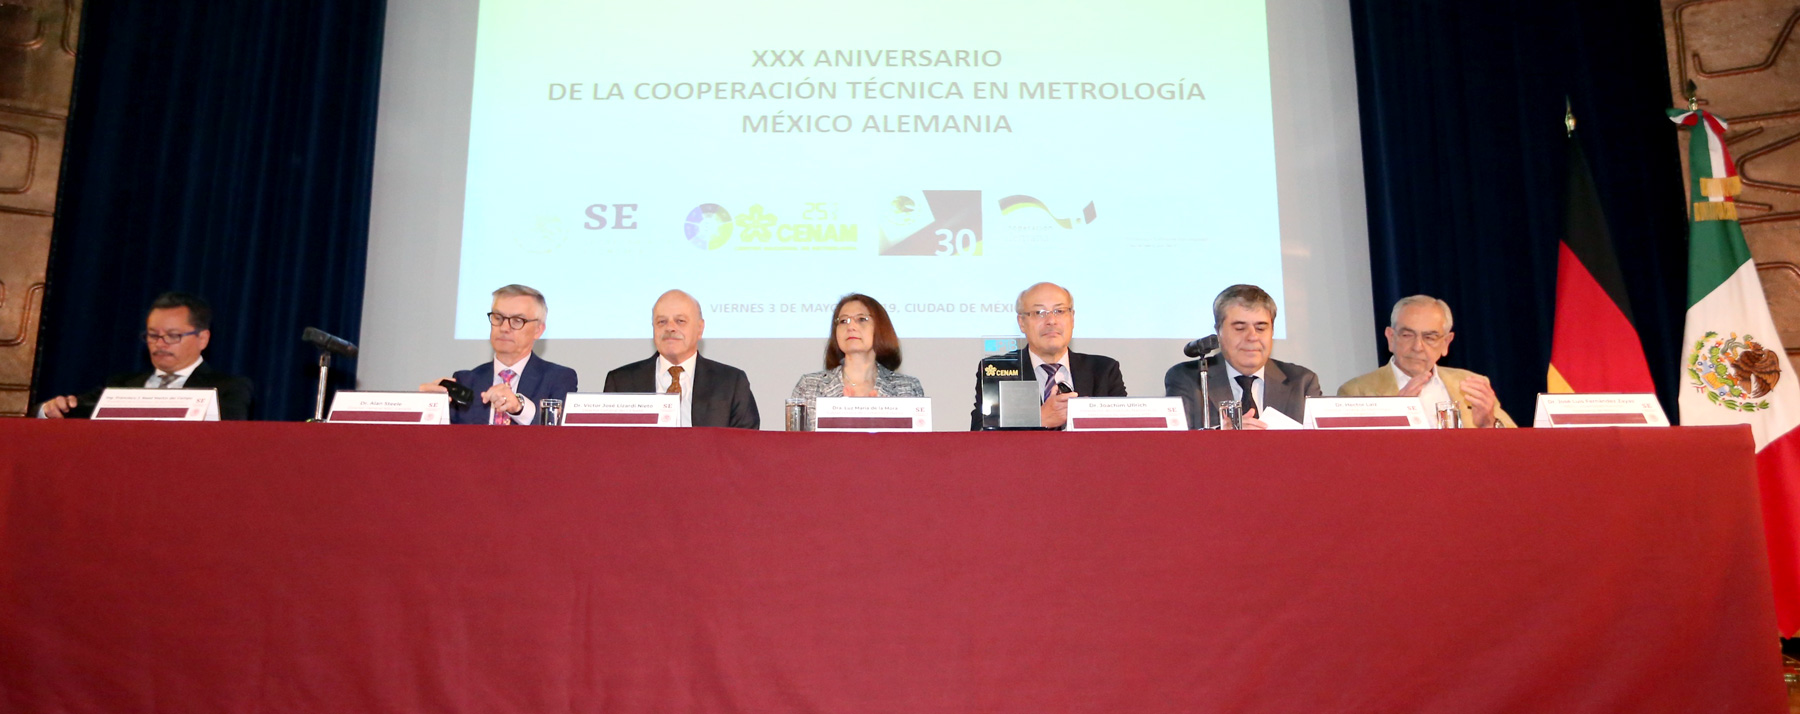 Cumple treinta años la cooperación técnica entre México y Alemania en materia de metrología y calidad